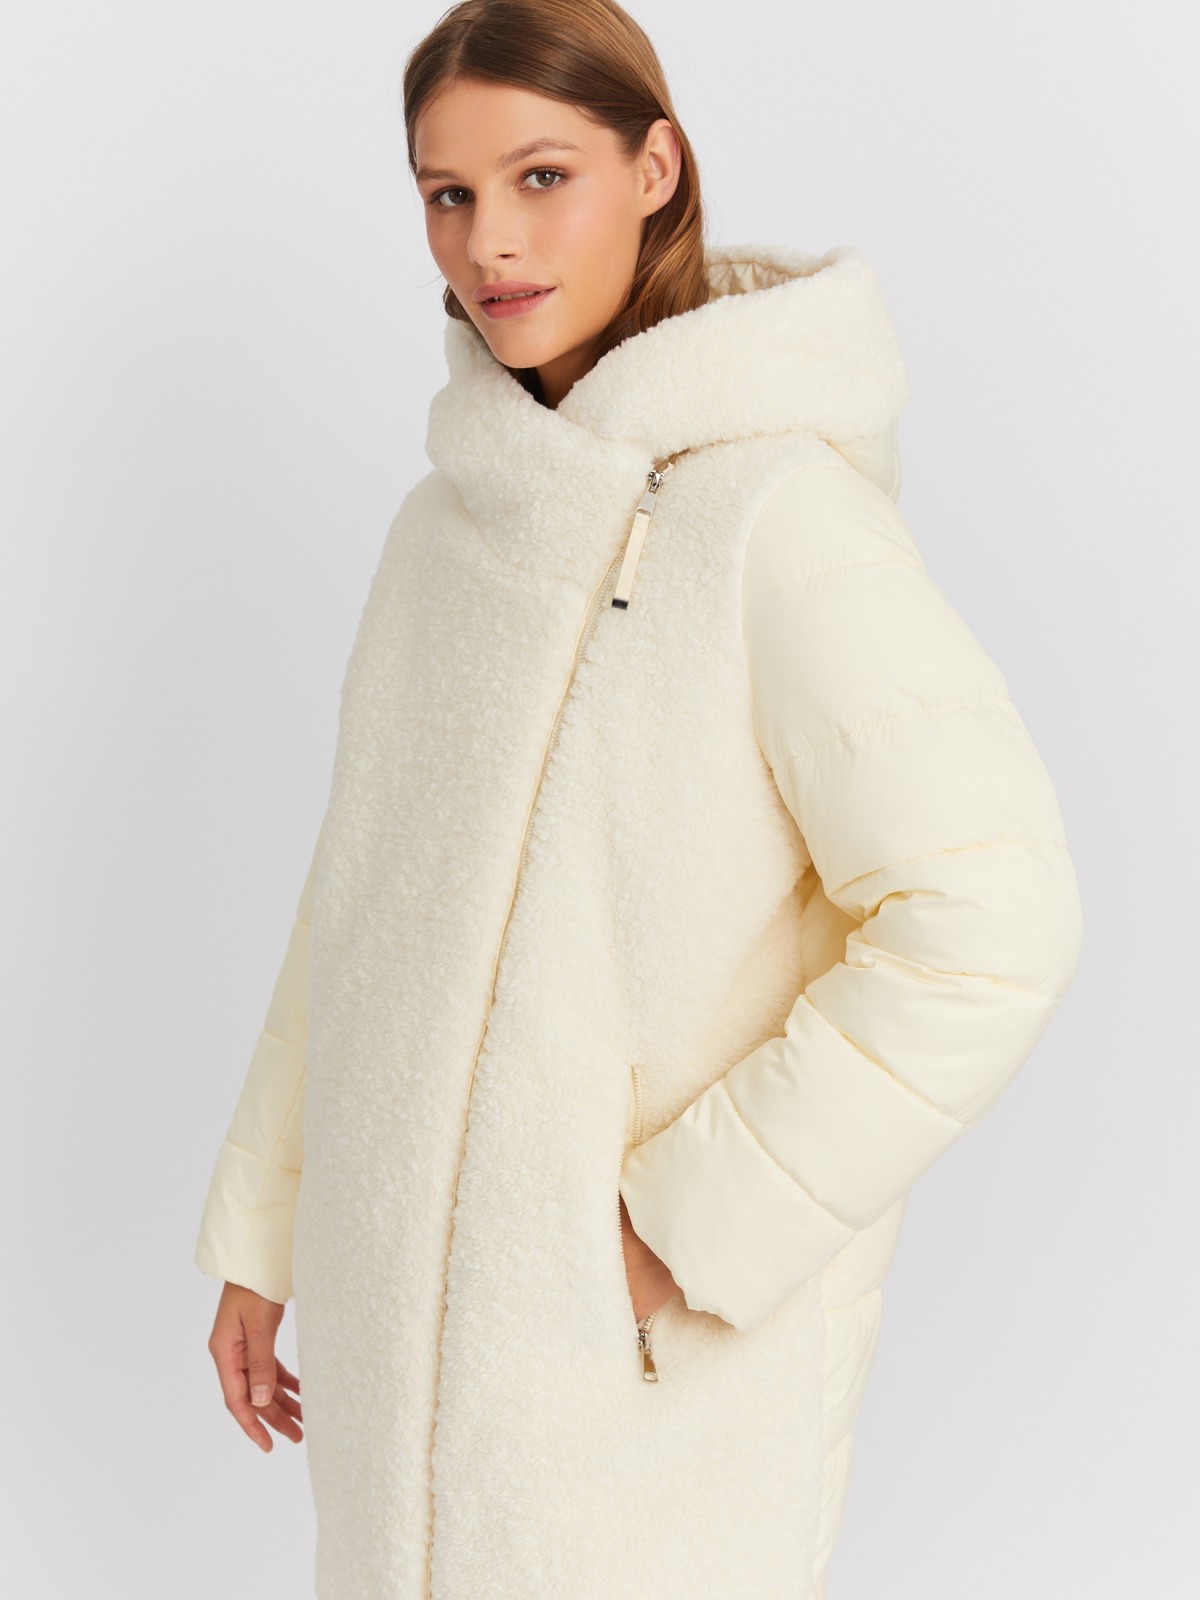 Тёплая куртка-пальто с капюшоном и отделкой из экомеха zolla 022425212164, цвет молоко, размер L - фото 3